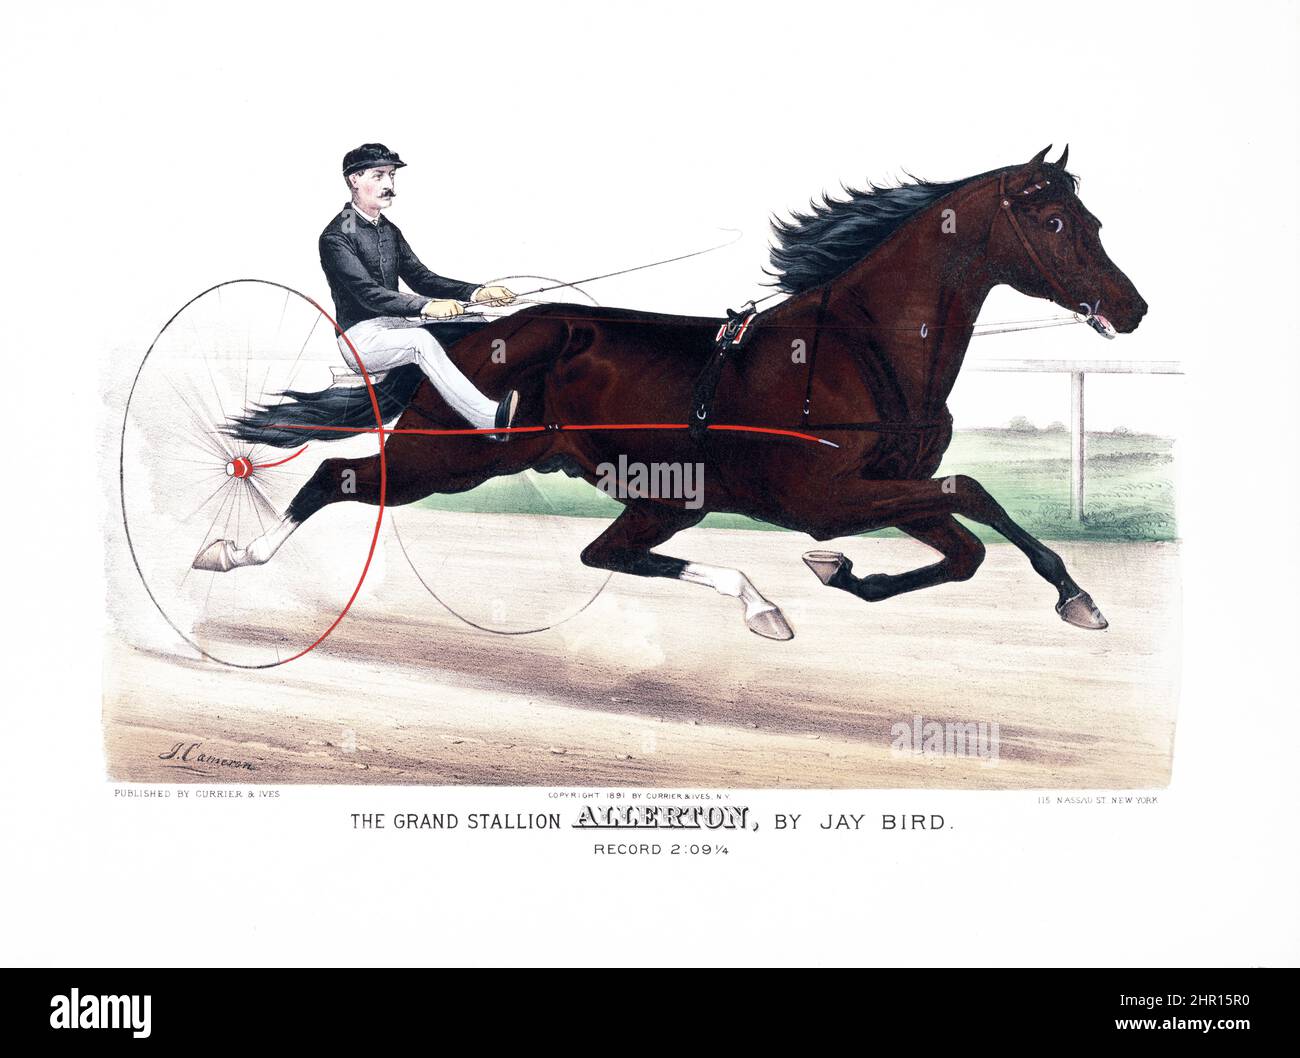 Il grande stallone Allerton, di Jay Bird - litografie--mano-colorato 1889. Opera di John Cameron. Pubblicato da Currier & Ives. Foto Stock